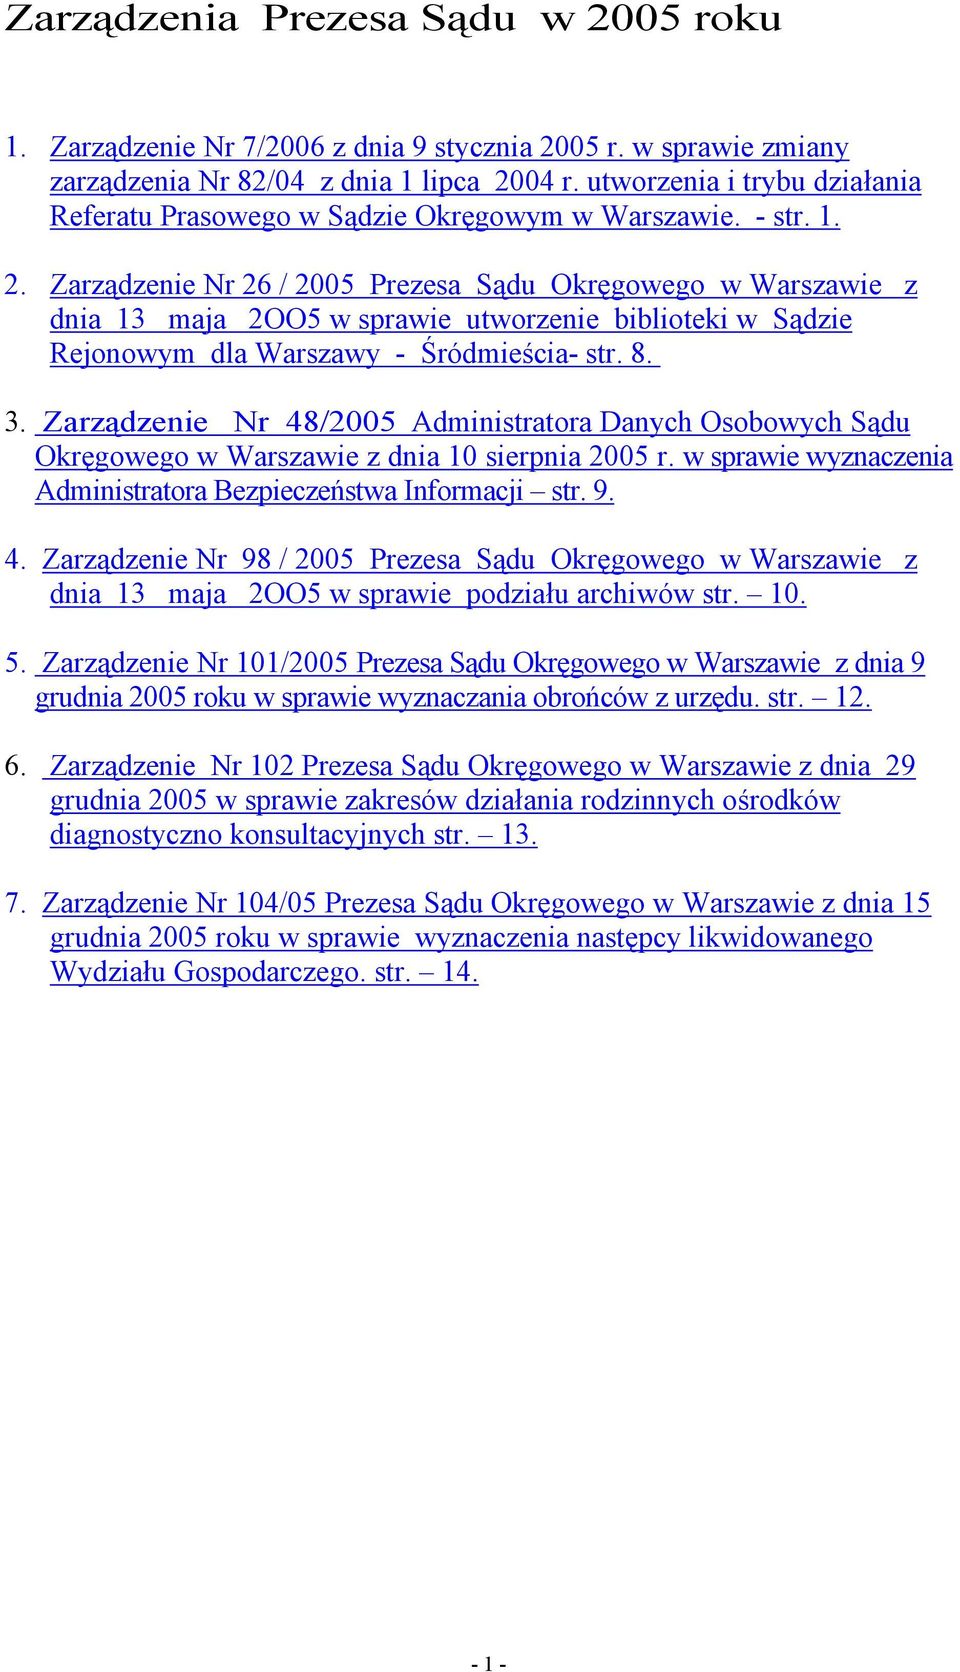 Zarządzenie Nr 26 / 2005 Prezesa Sądu Okręgowego w Warszawie z dnia 13 maja 2OO5 w sprawie utworzenie biblioteki w Sądzie Rejonowym dla Warszawy - Śródmieścia- str. 8. 3.